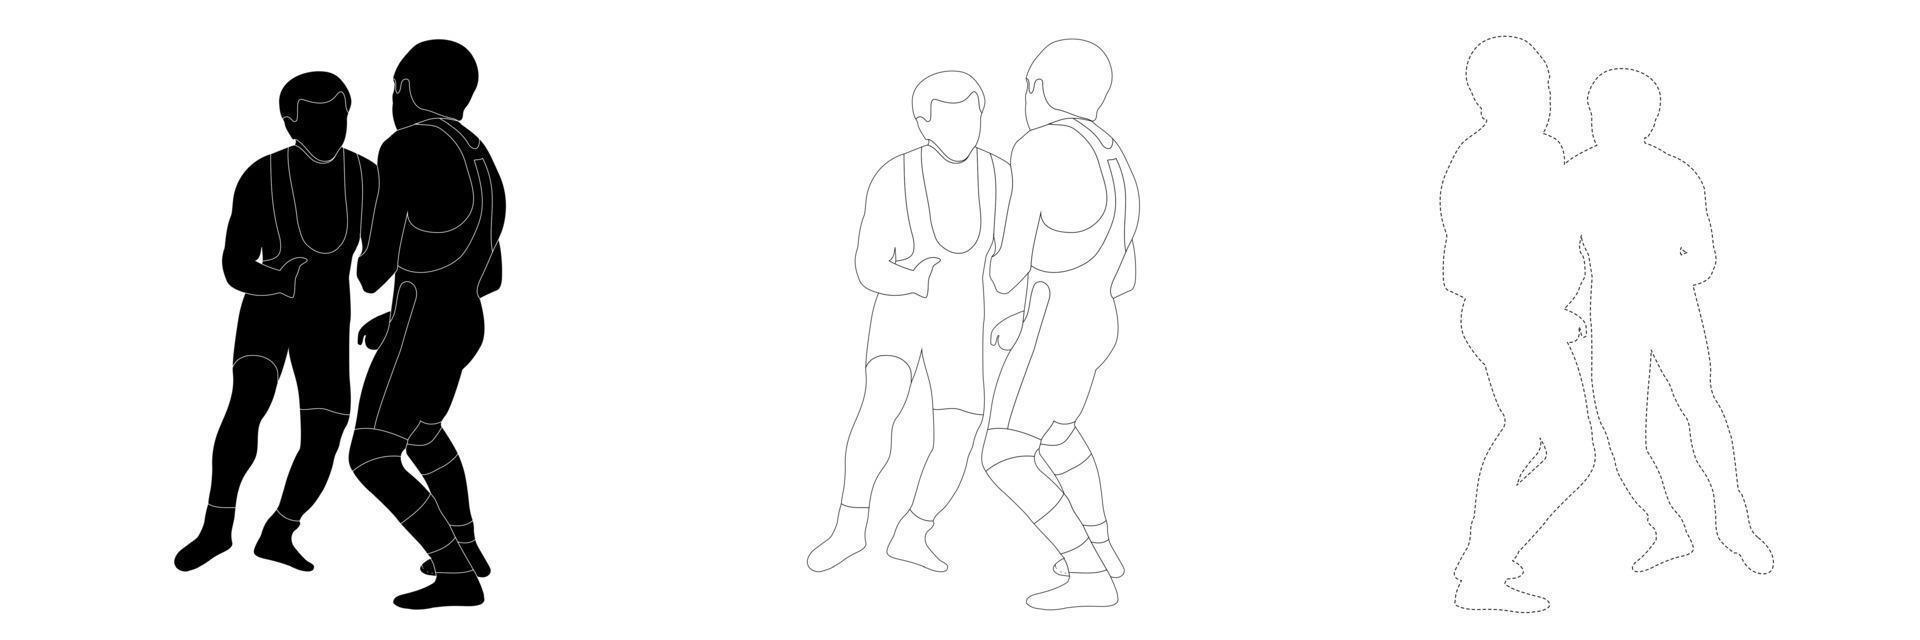 contorno schizzo silhouette in bianco e nero di un atleta lottatore nel wrestling, holding, grappling. doodle disegno a tratteggio in bianco e nero. vettore